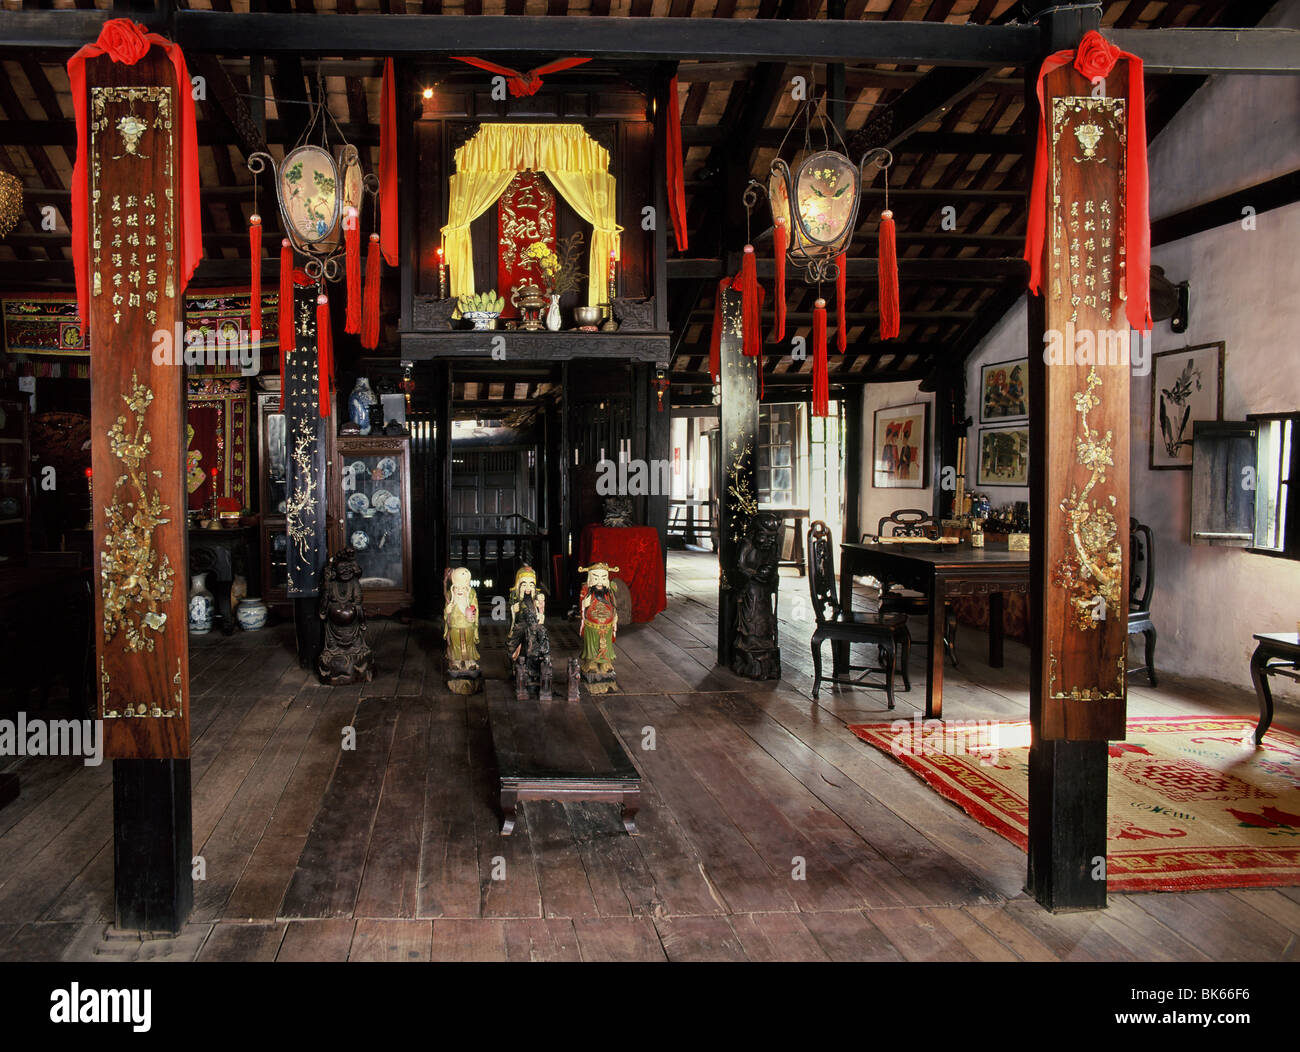 Altar im Wohnzimmer eines chinesischen Hauses Baujahr 1780, Phung Hung House, Hoi An, Vietnam, Indochina, Südostasien, Asien Stockfoto